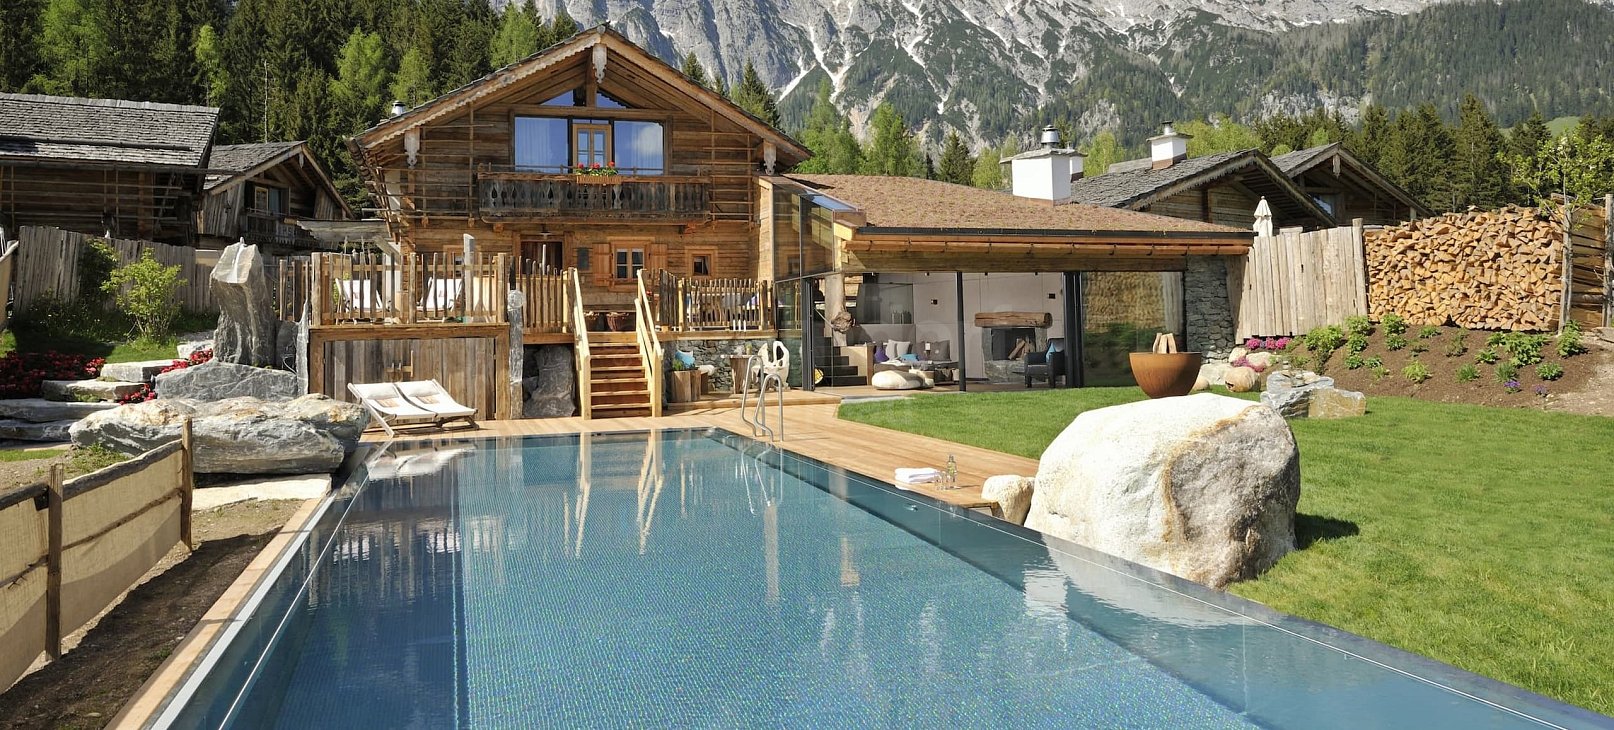 Privátní bazén s přelivem a infinity sníženým žlábkem Bergdorf